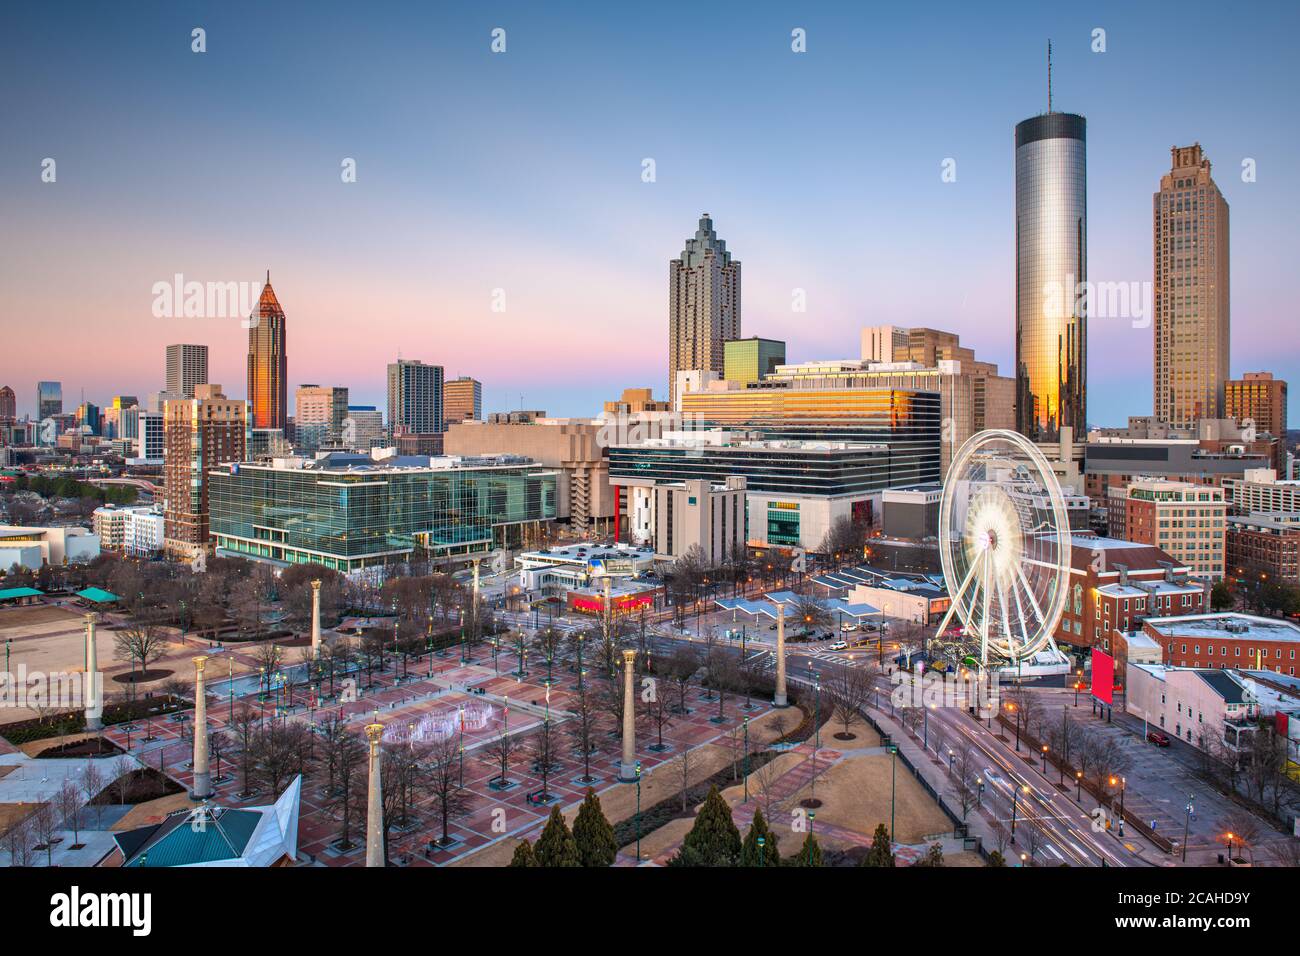 Atlanta, Georgia, USA downtown skyline at twilight. Stock Photo